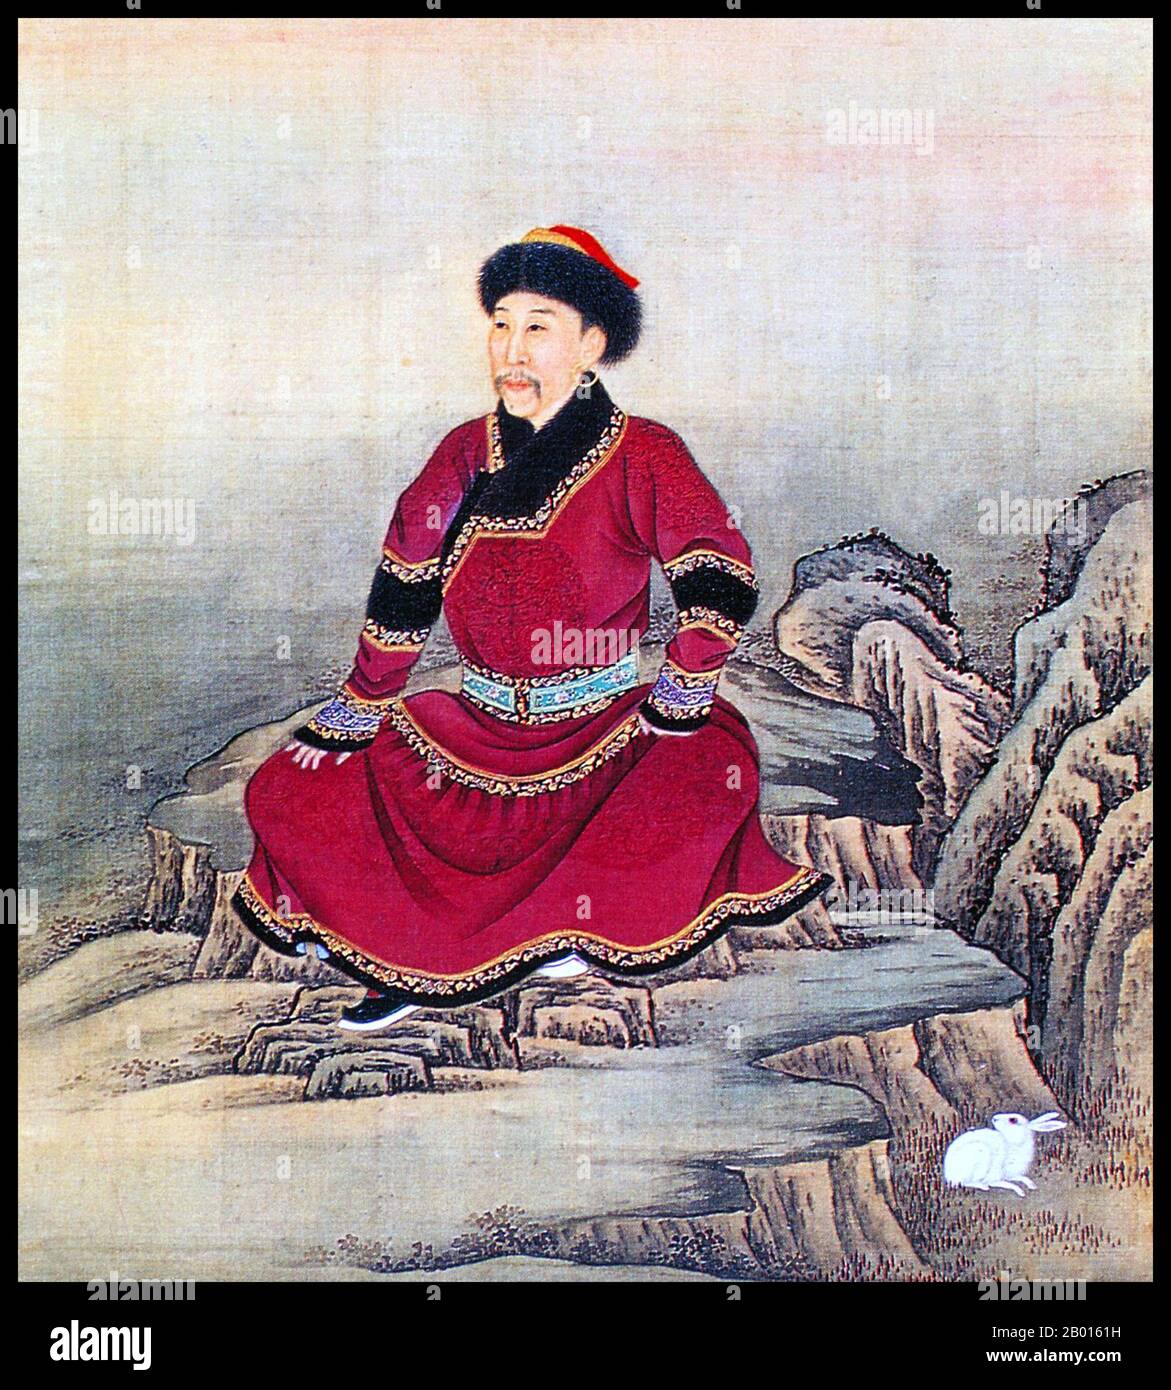 Cina: Imperatore Yongzheng (13 dicembre 1678 – 8 ottobre 1735), 5° governatore della dinastia Qing (r. 1722-1735), in costume tradizionale. Album foglia pittura, c.. 1723-1735. L'imperatore Yongzheng, nato Yinzhen e il nome del tempio Shizong, era il quinto imperatore della dinastia Qing. Un righello duro-funzionante, l'obiettivo principale di Yongzheng era quello di creare un governo efficace a spese minime. Come suo padre, l'imperatore Kangxi, Yongzheng usò la forza militare per preservare la posizione della dinastia. Sospettato dagli storici di aver usurpato il trono, il suo regno fu spesso chiamato dispotico, efficiente e vigoroso. Foto Stock